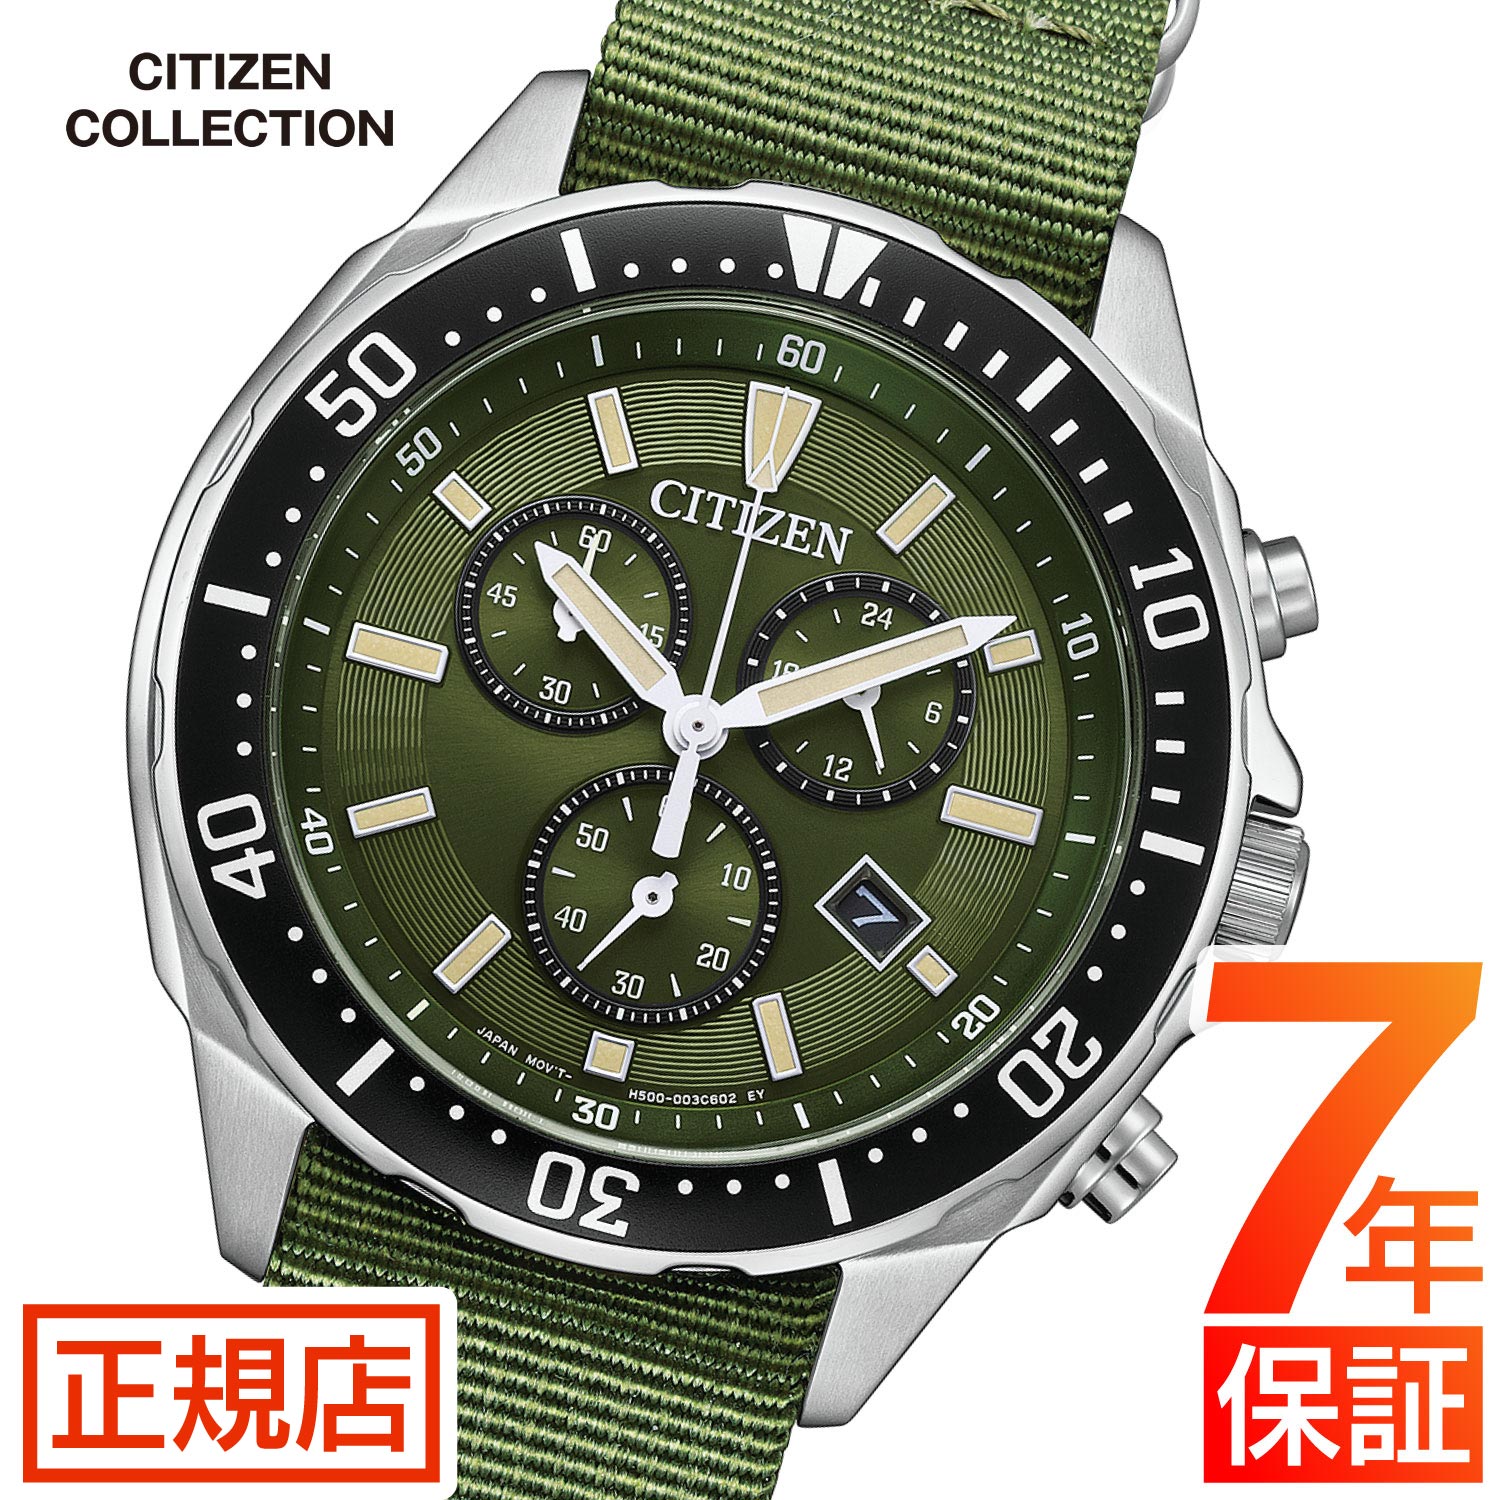 シチズン コレクション シチズン ソーラー エコドライブ 腕時計 メンズ CITIZEN COLLECTION AT2500-19W 41mm  ナイロンベルト クロノグラフ 日付